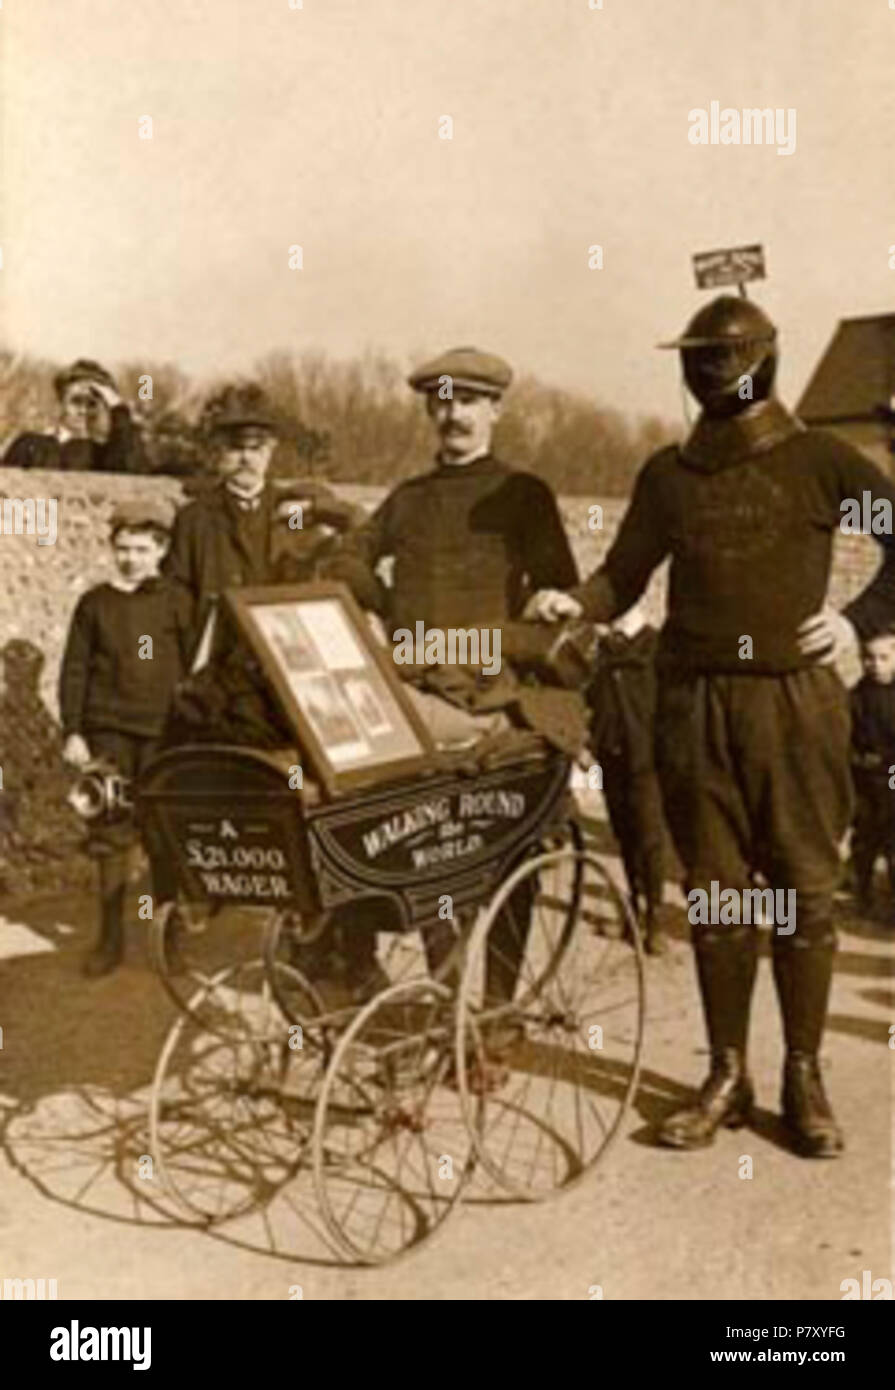 Englisch: en: Harry Bensley in West Sussex Original descript.: Mann mit eisernen Maske zu Fuß rund um die Welt für eine £ 21.000 Wette. 14. Februar 1908 202 Idoc Stockfoto